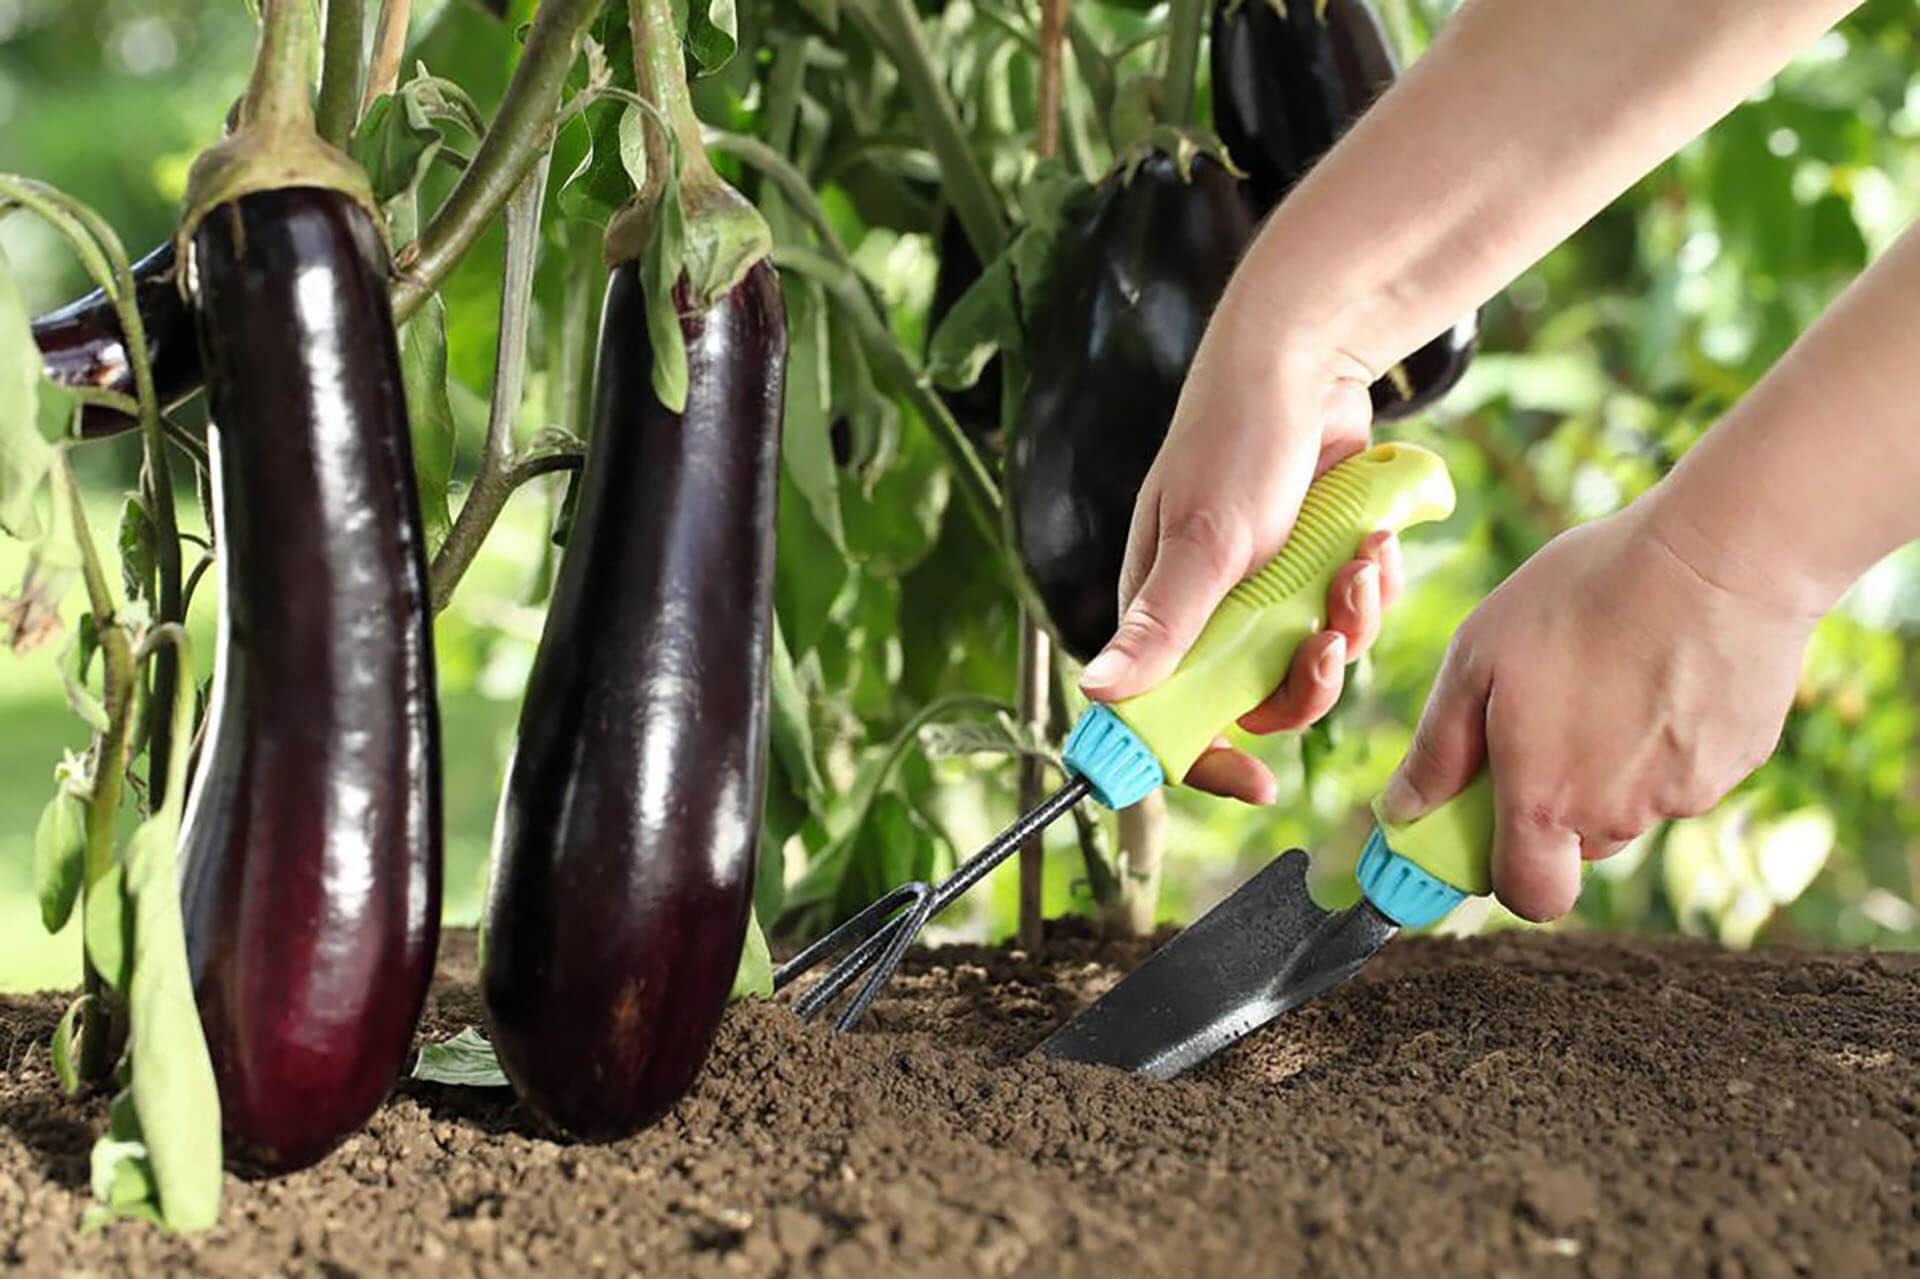 Правила выращивания баклажанов в теплице и открытом грунте: секреты получения высокого урожая